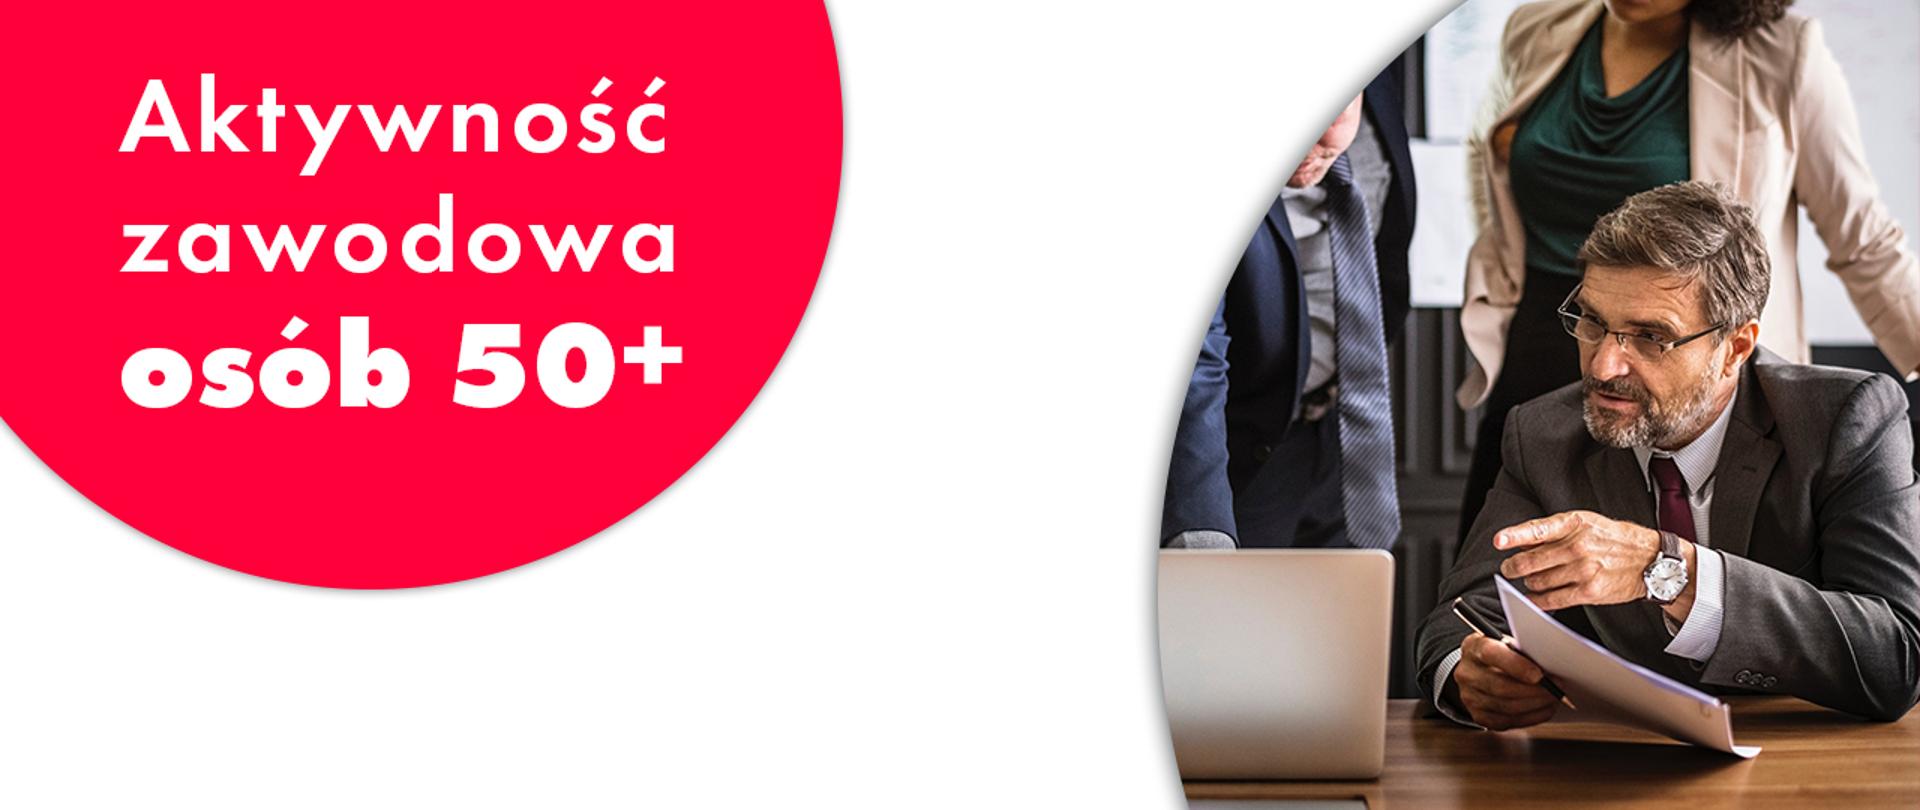 Grafika przedstawia: po lewej stronie fragment czerwonego koła, na nim napis "Aktywność zawodowa osób 50+", po prawej stronie zdjęcie dojrzałego mężczyzny, siwego, z siwym zarostem, ubranego w garnitur. W ręku trzyma dokumenty i pióro. Siedzi za biurkiem, wskazuje i patrzy na ekran laptopa.